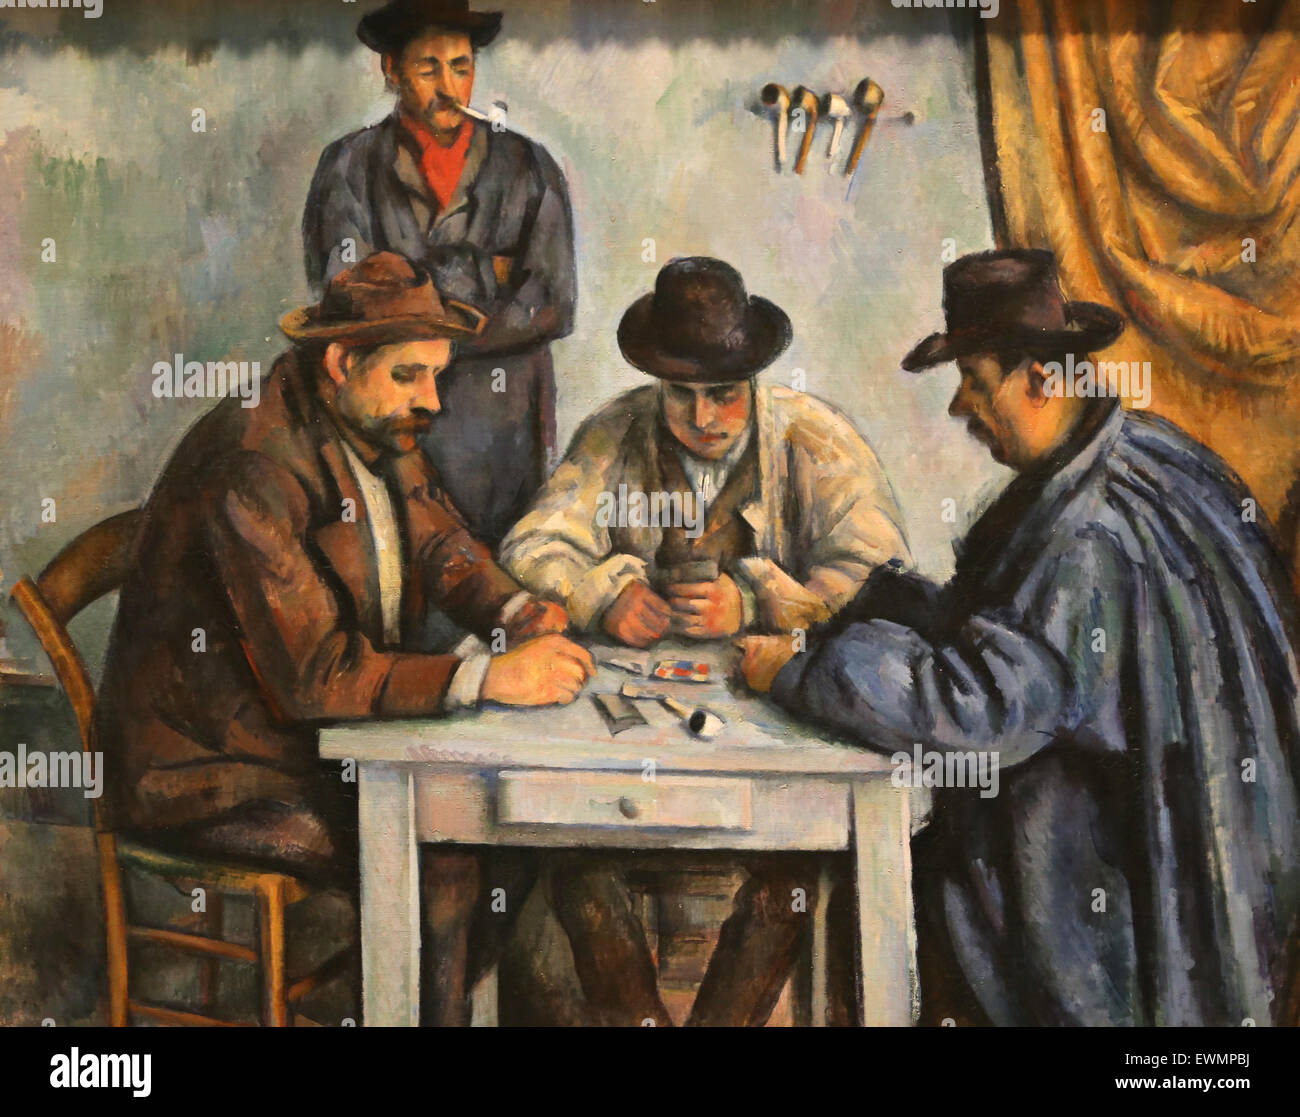 Paul Cézanne (1839-1906). Le peintre français. Les joueurs de cartes, 1880-92. Huile sur toile. Metropolitan Museum of Art de New York. USA. Banque D'Images